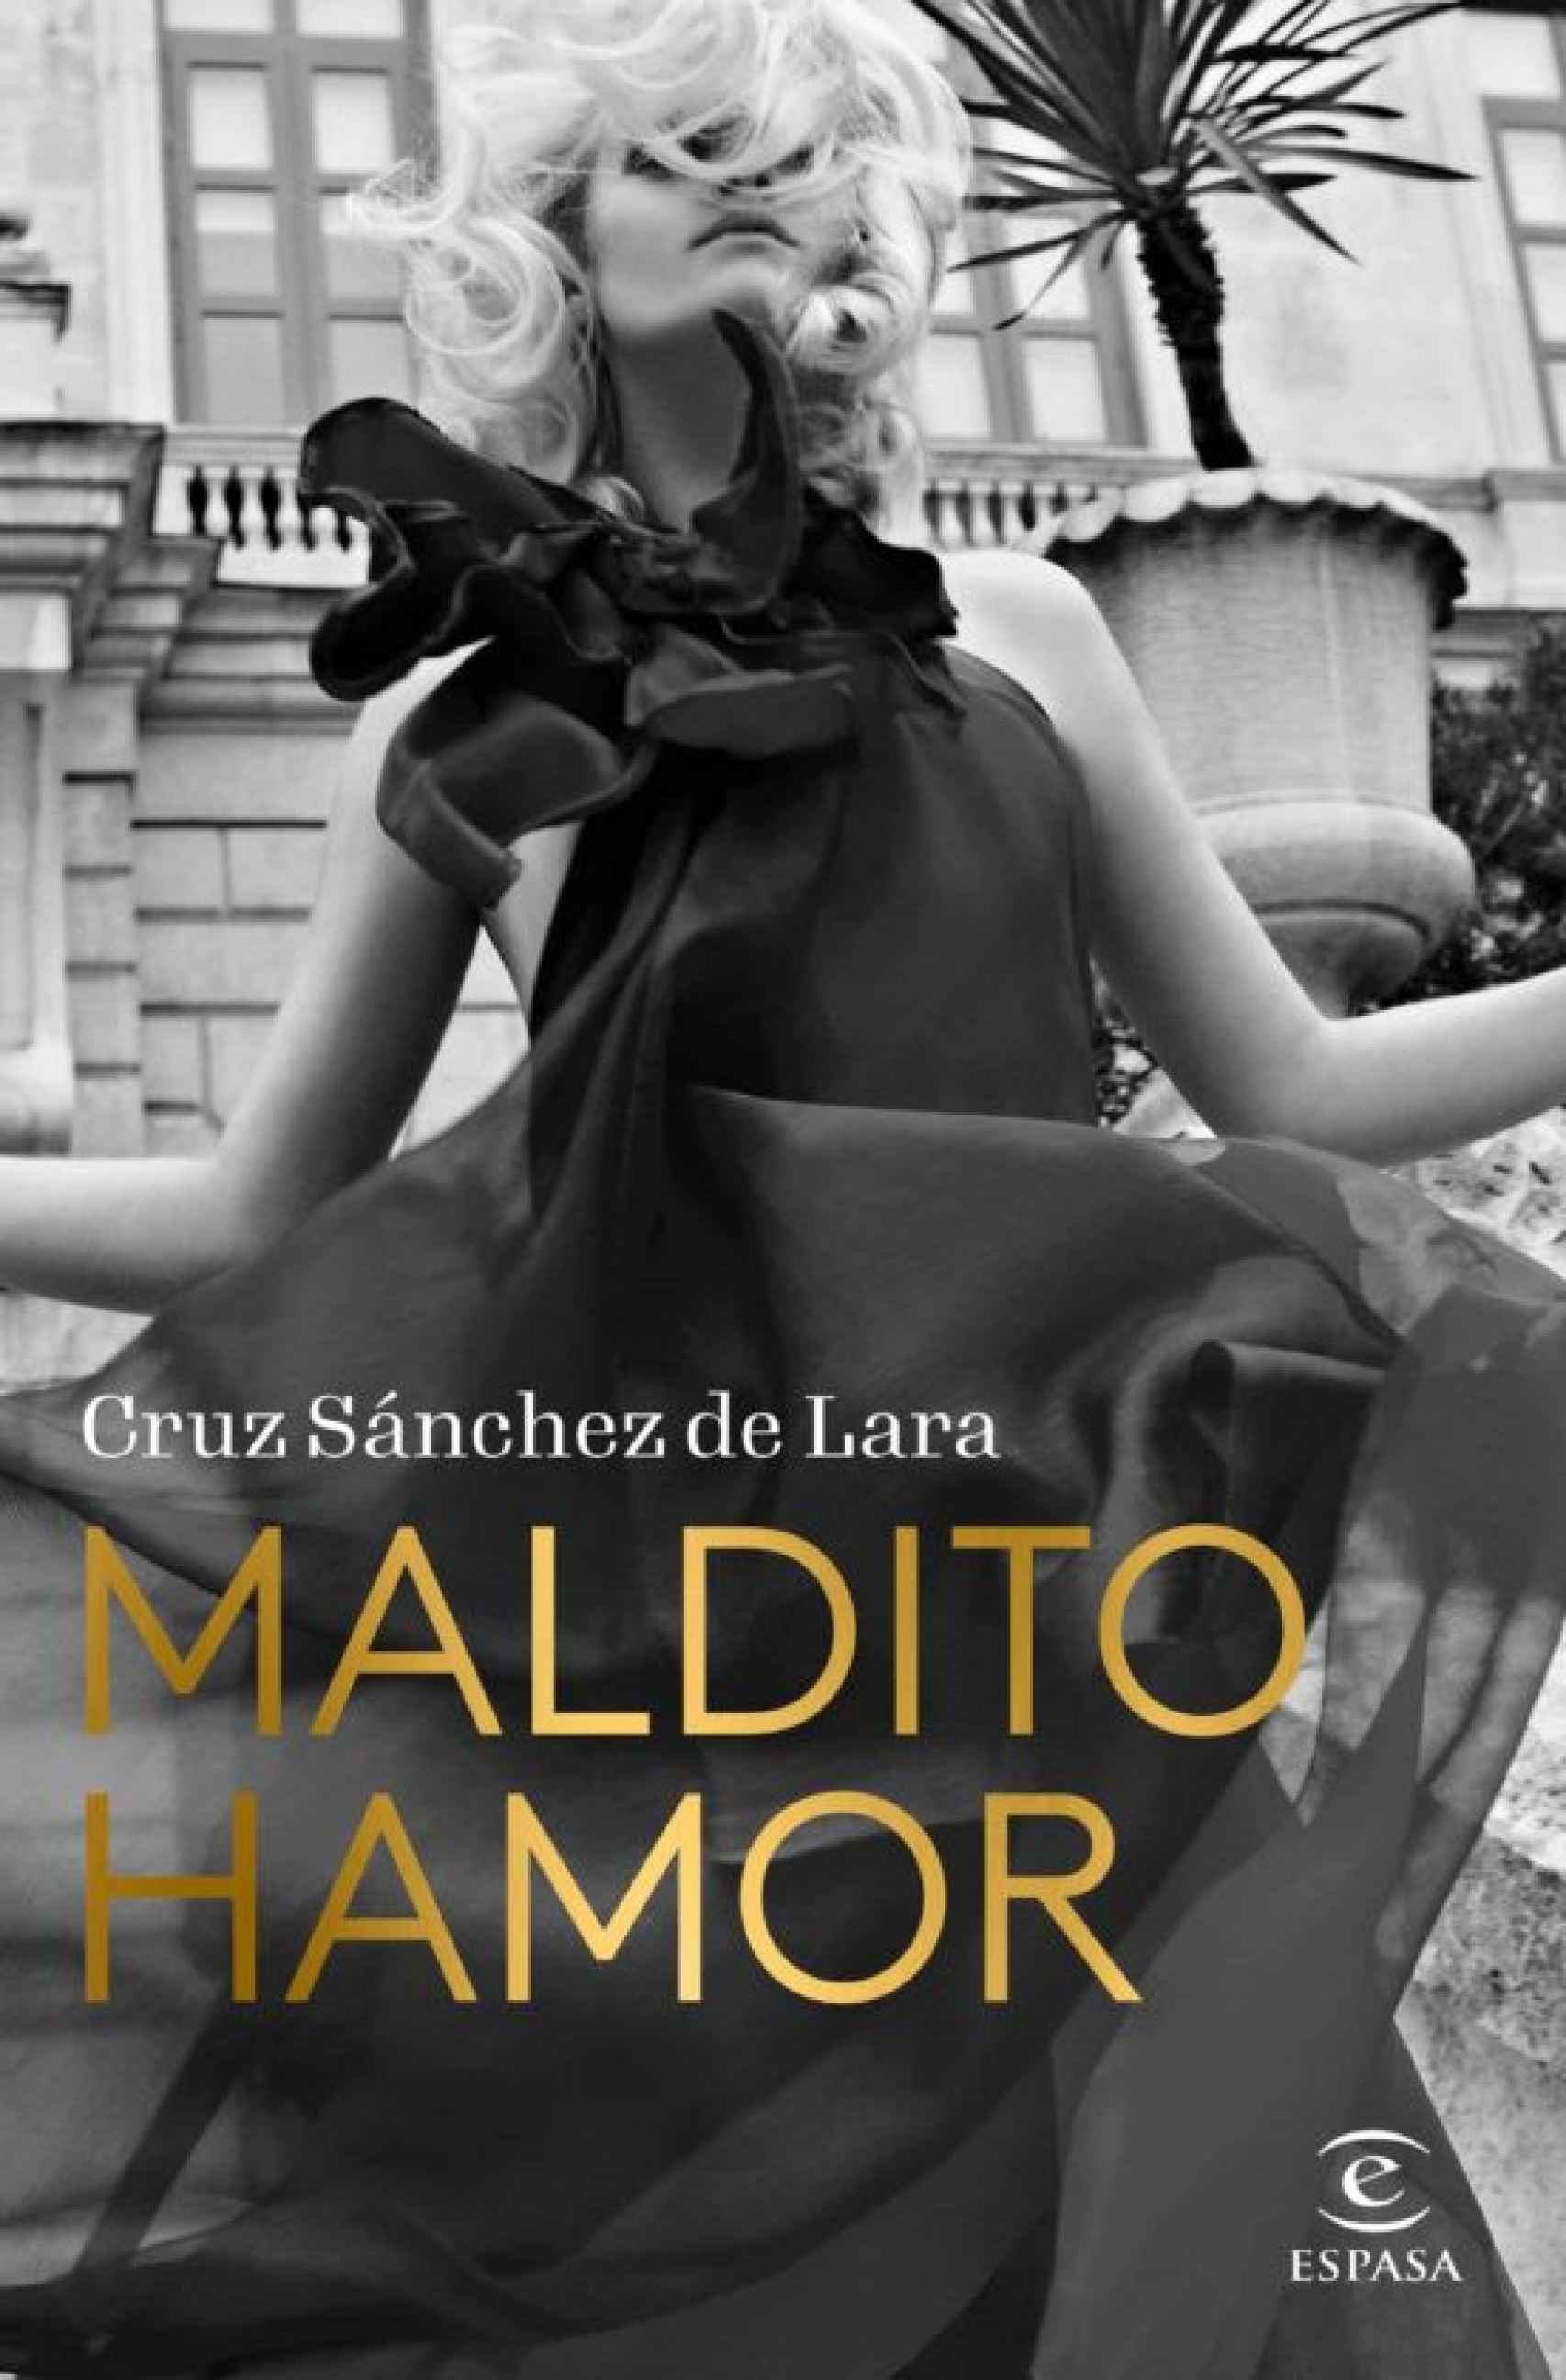 Portada de 'Maldito Hamor', el nuevo libro de Cruz Sánchez de Lara.